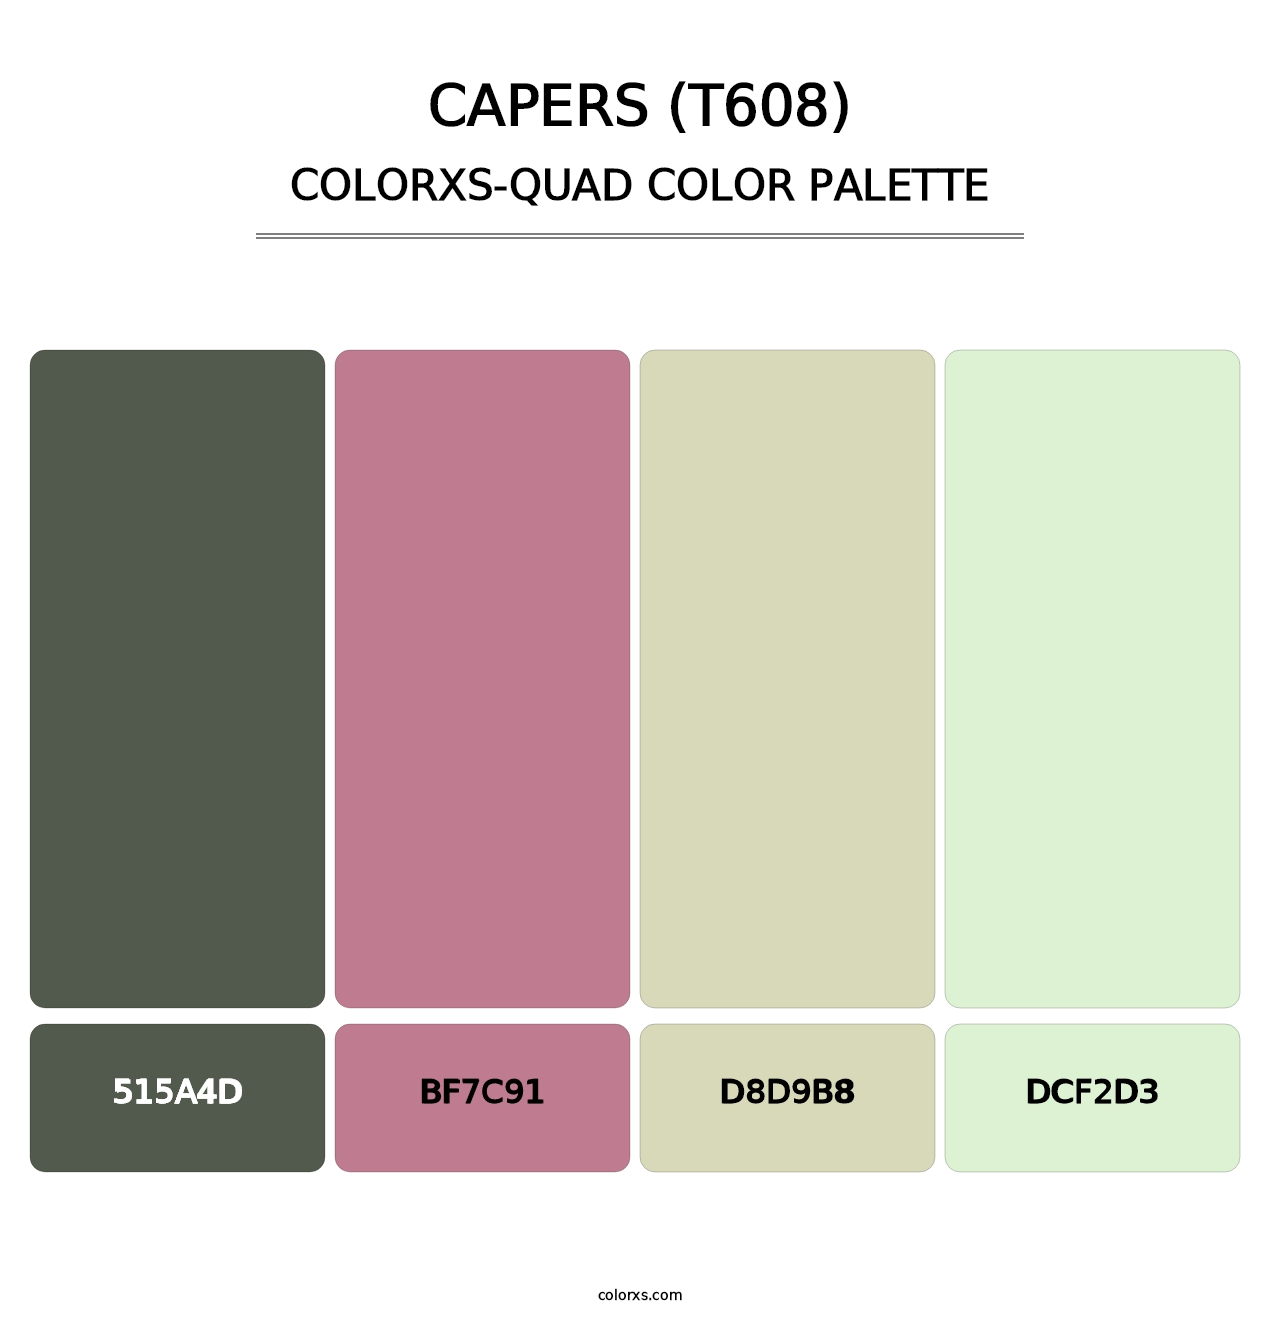 Capers (T608) - Colorxs Quad Palette